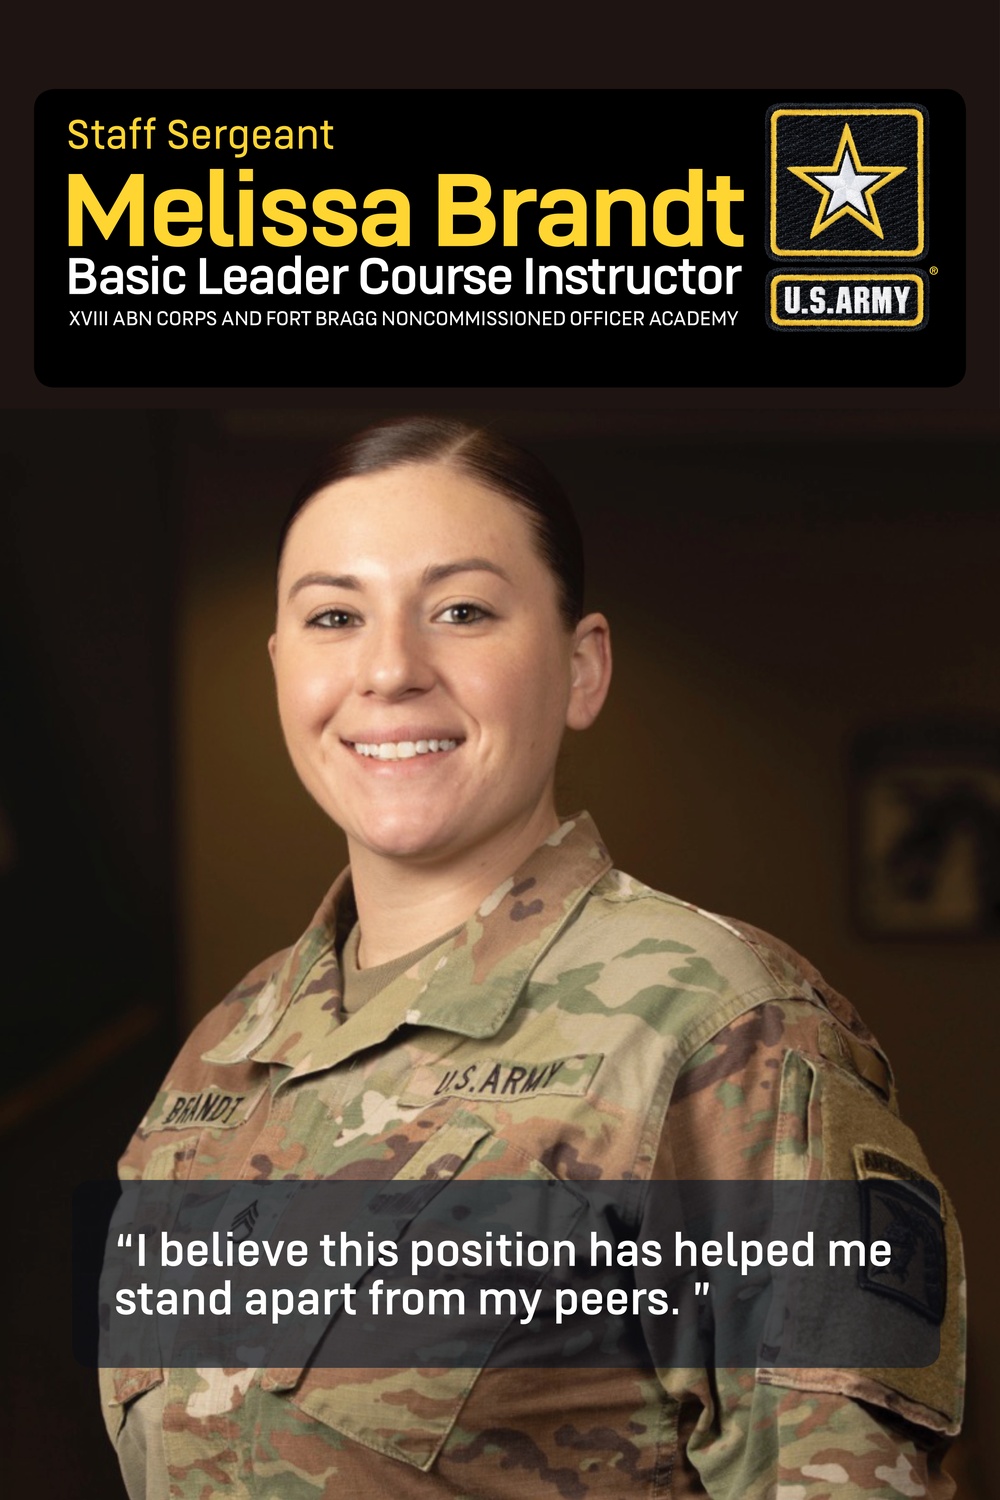 Army, Fort Bragg NCO instructor spotlight: Staff Sgt. Melissa Brandt